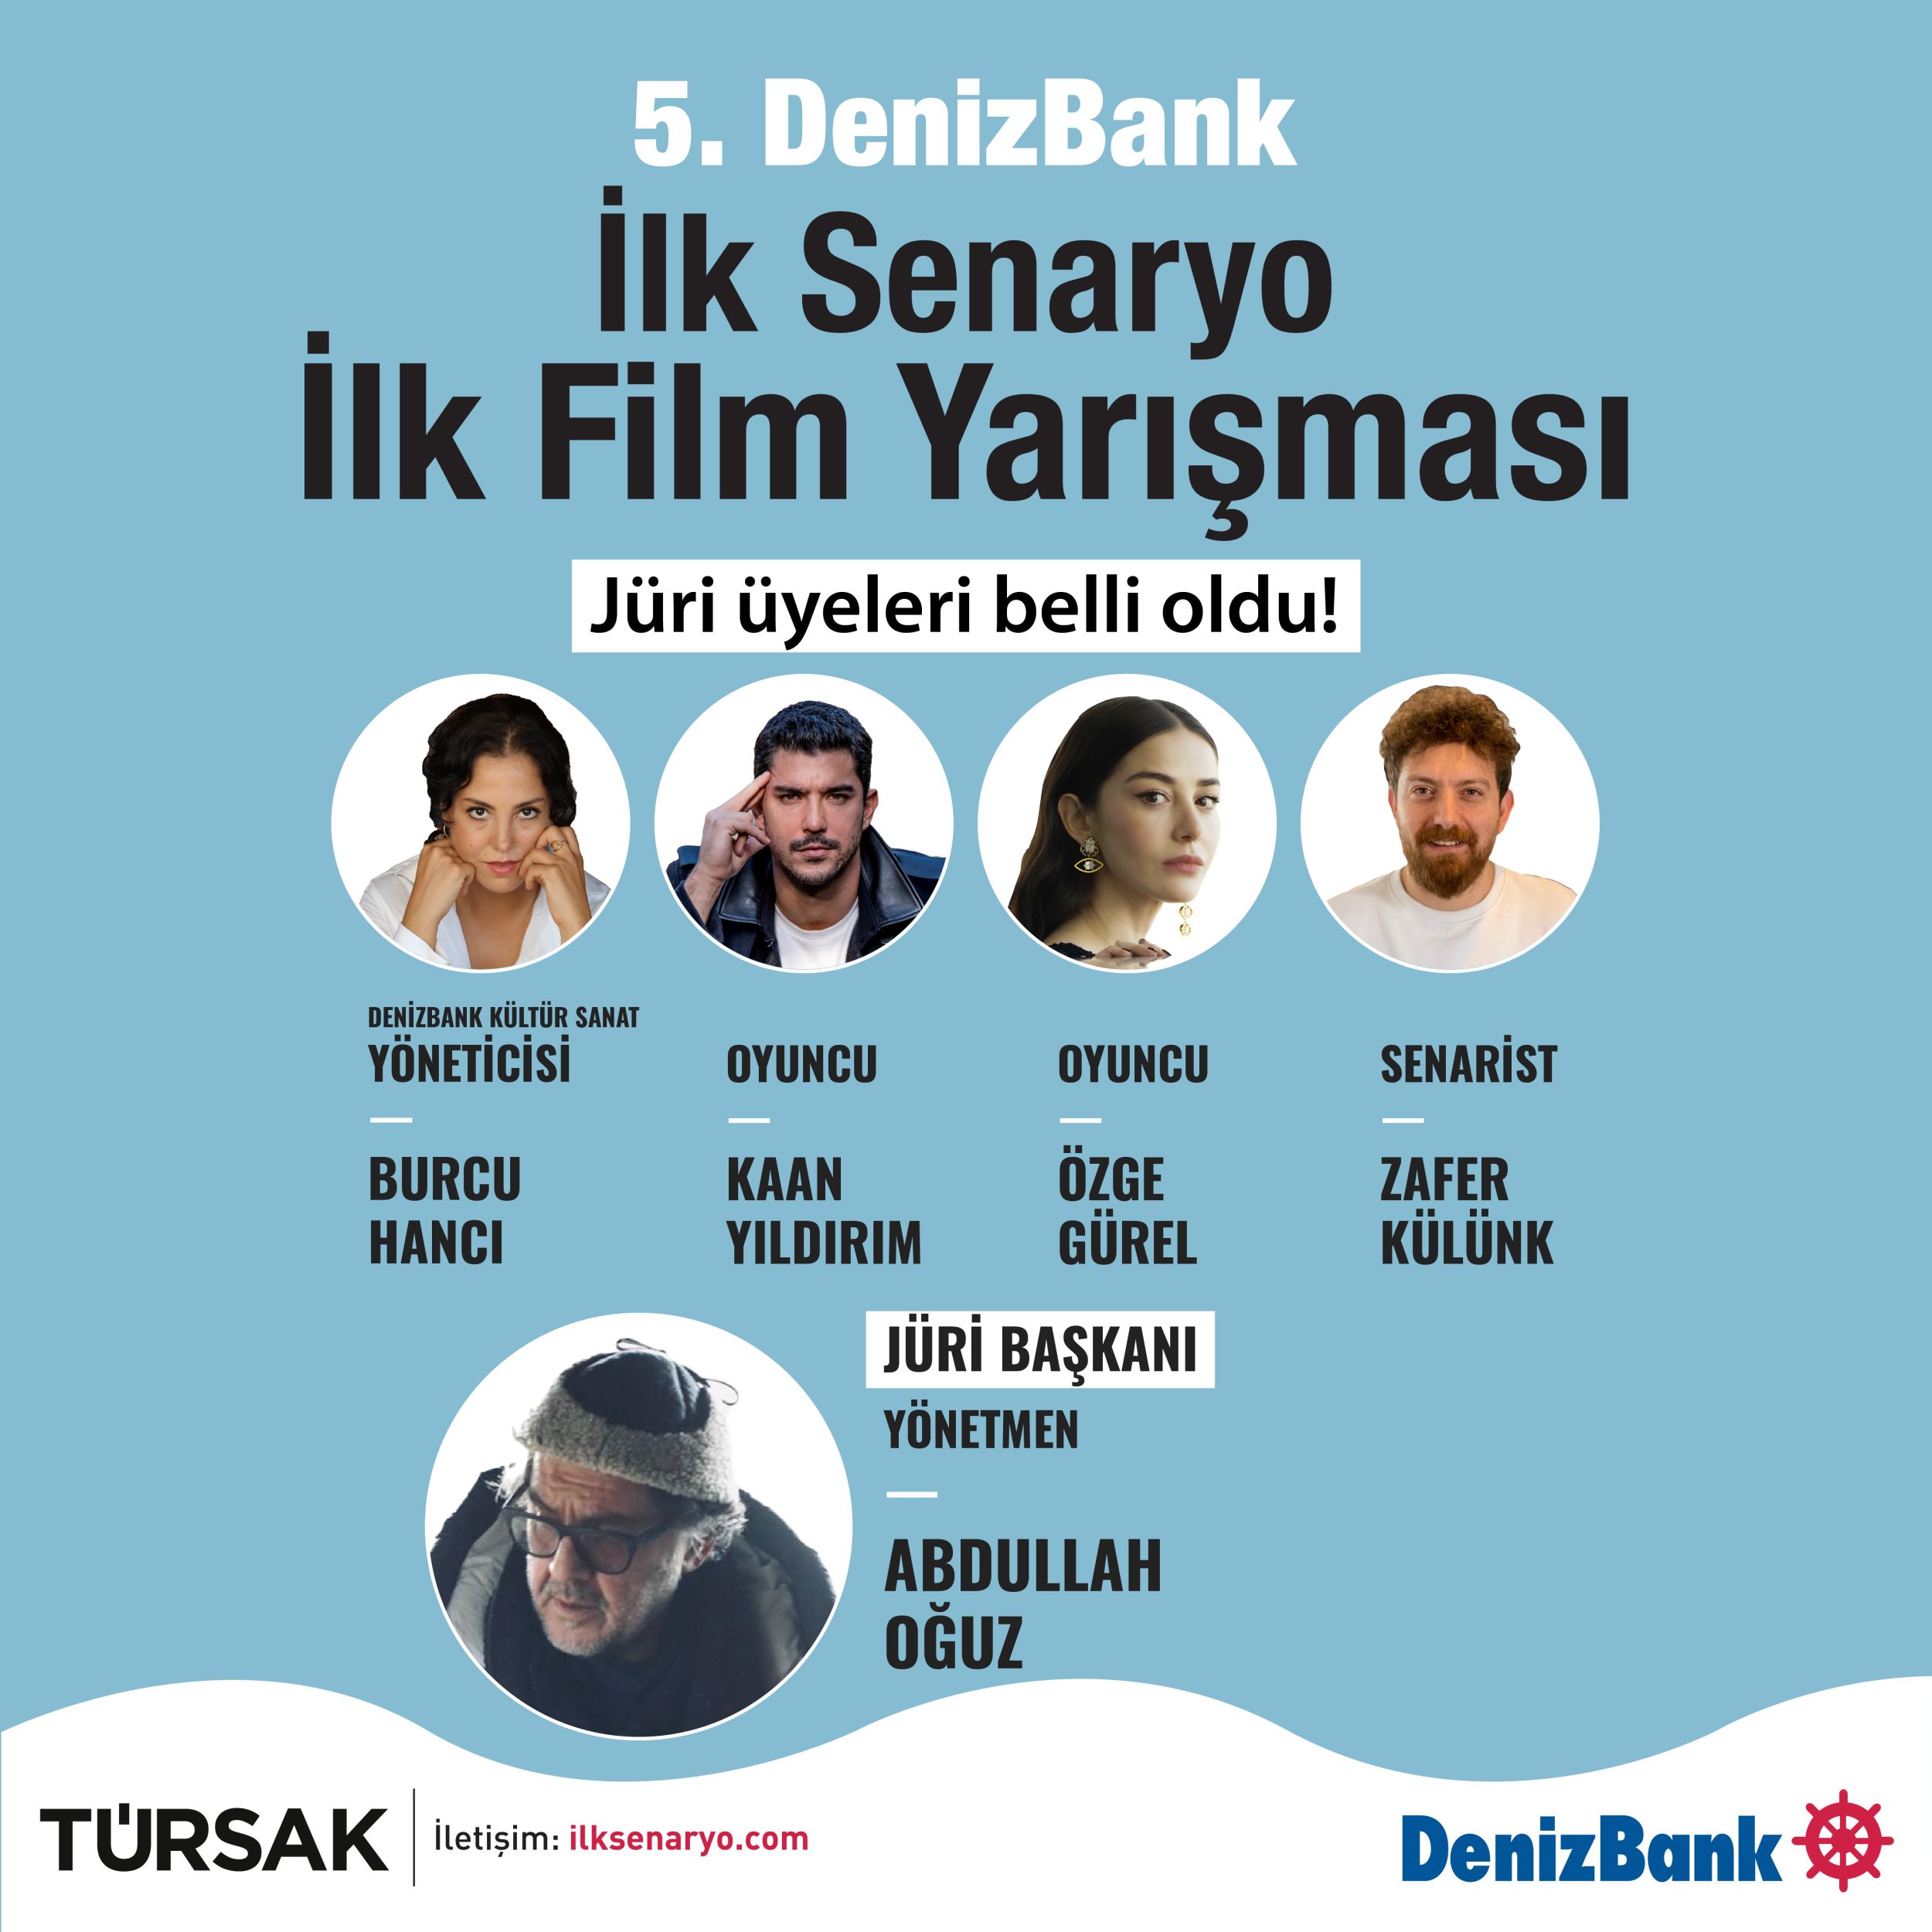 Denizbank İlk Senaryo İlk Film Yarışması’nın Jüri Üyeleri